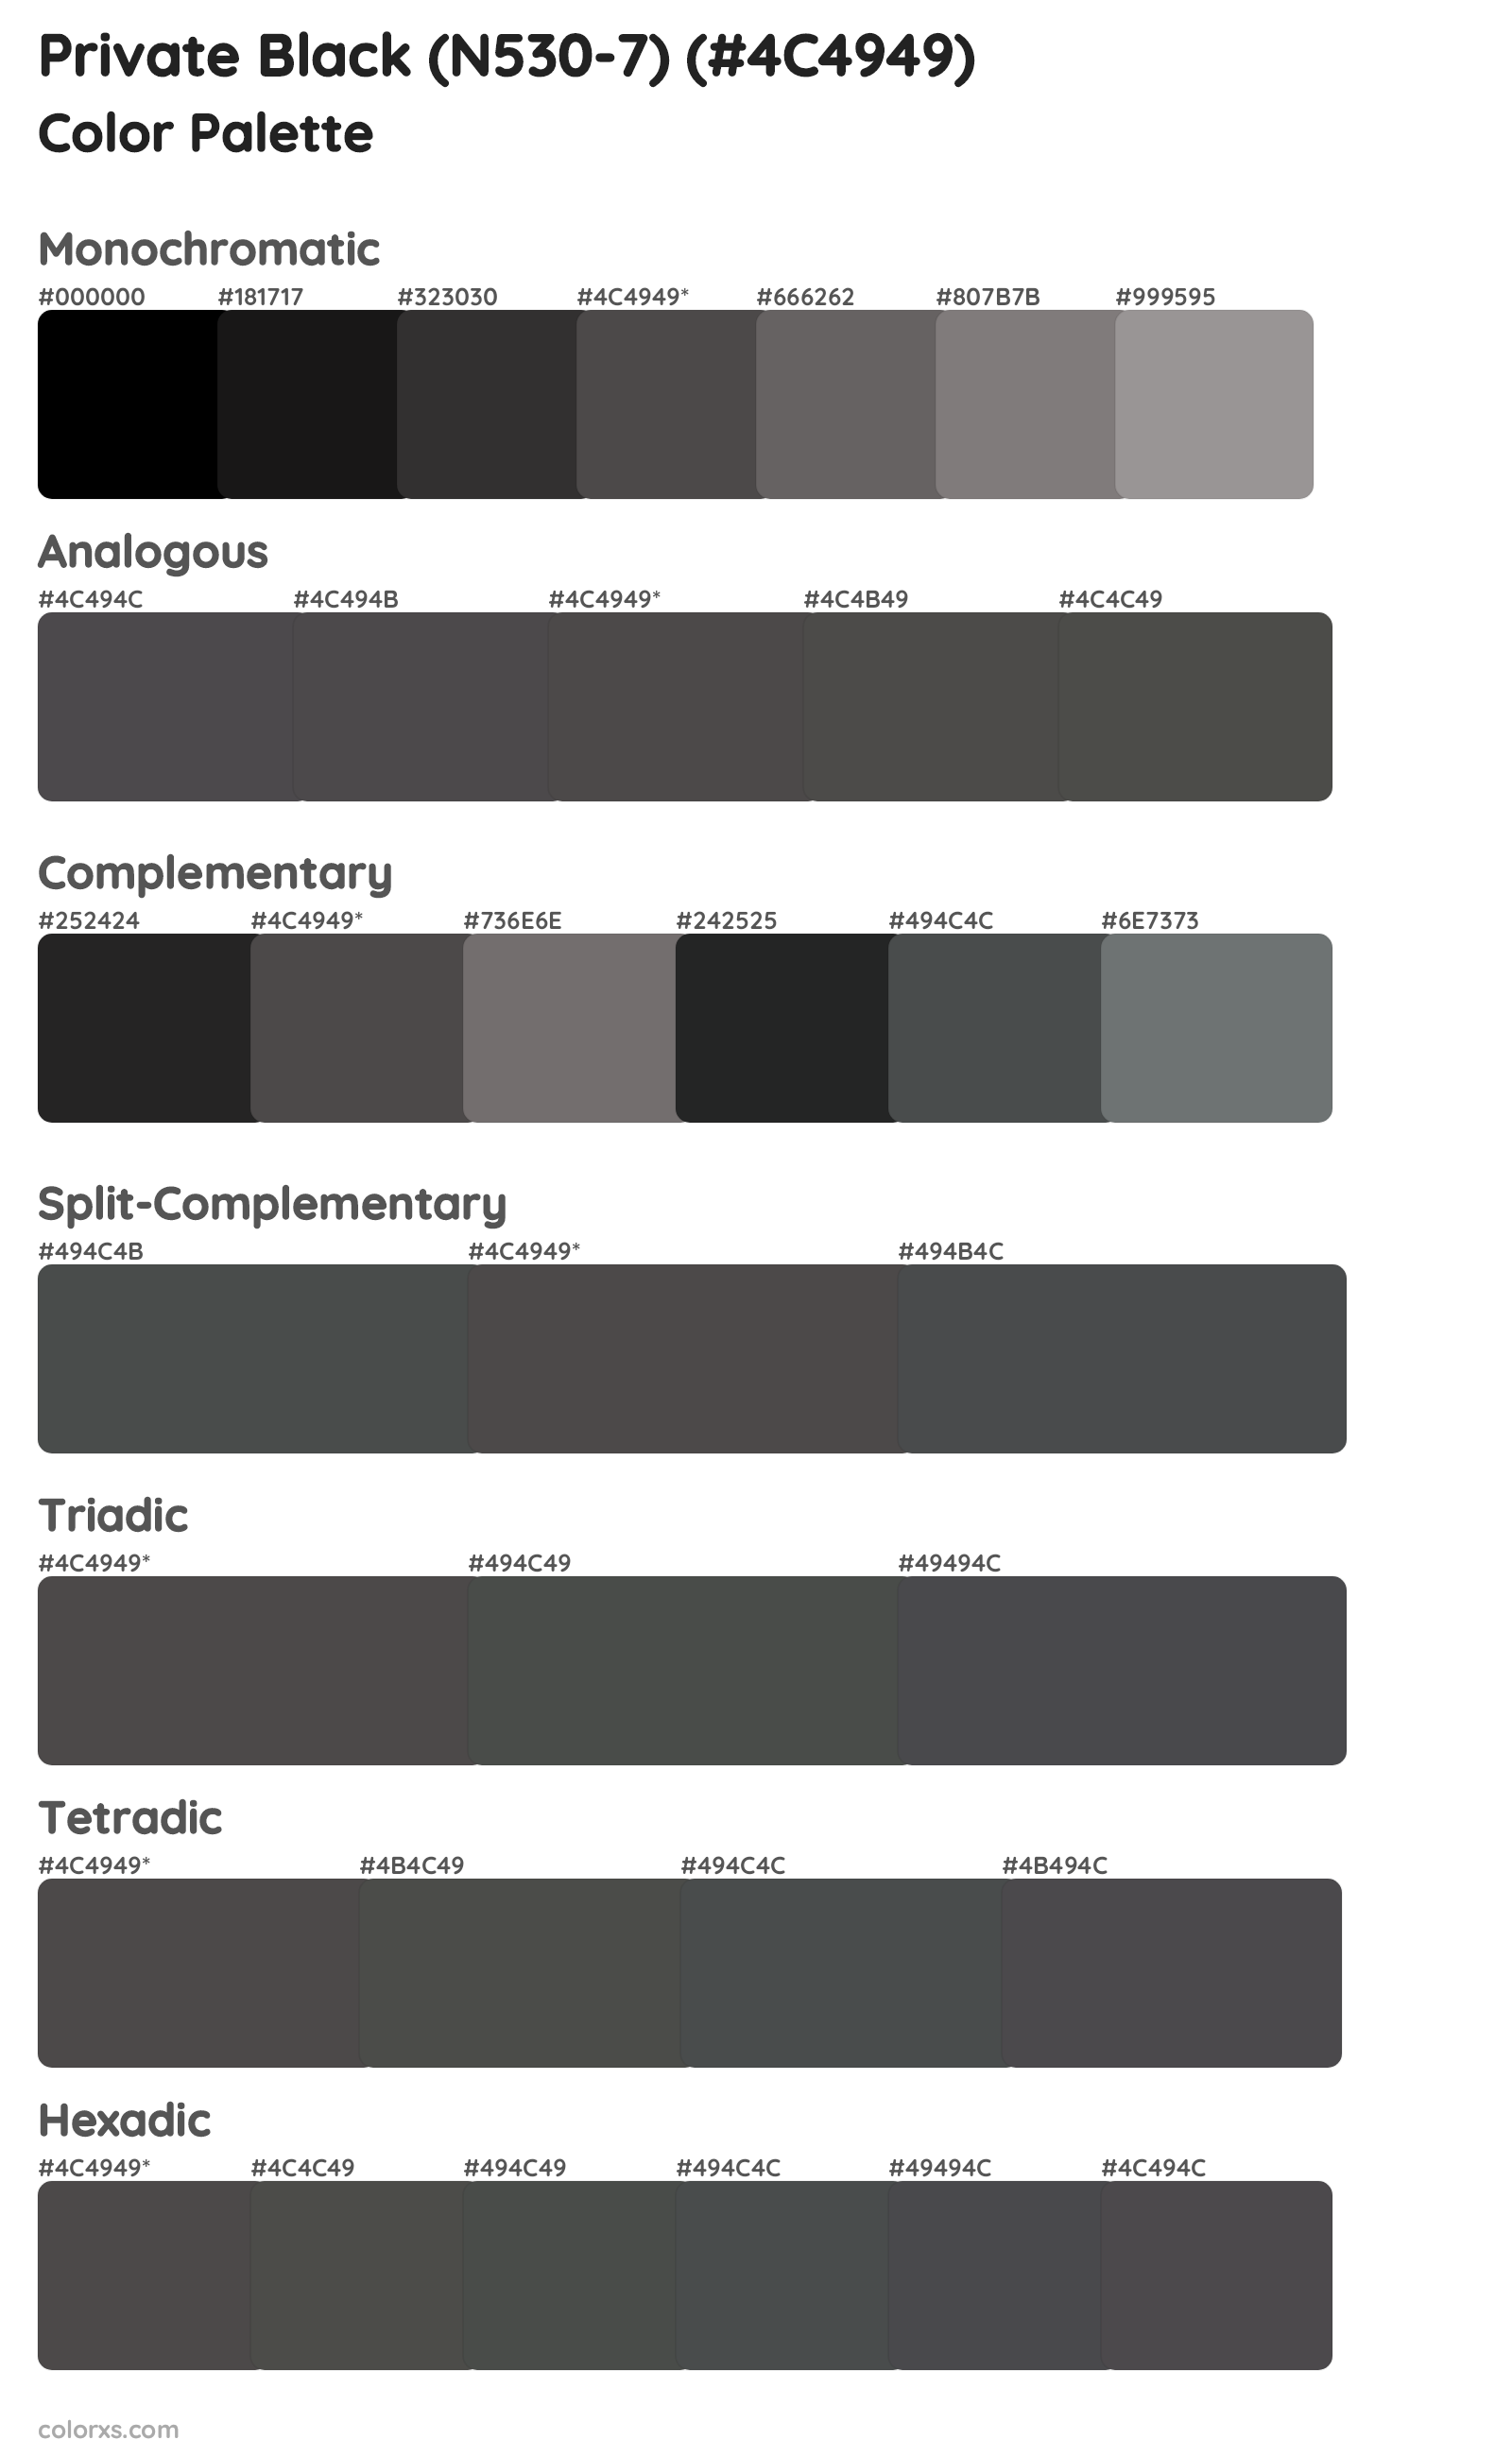 Private Black (N530-7) Color Scheme Palettes